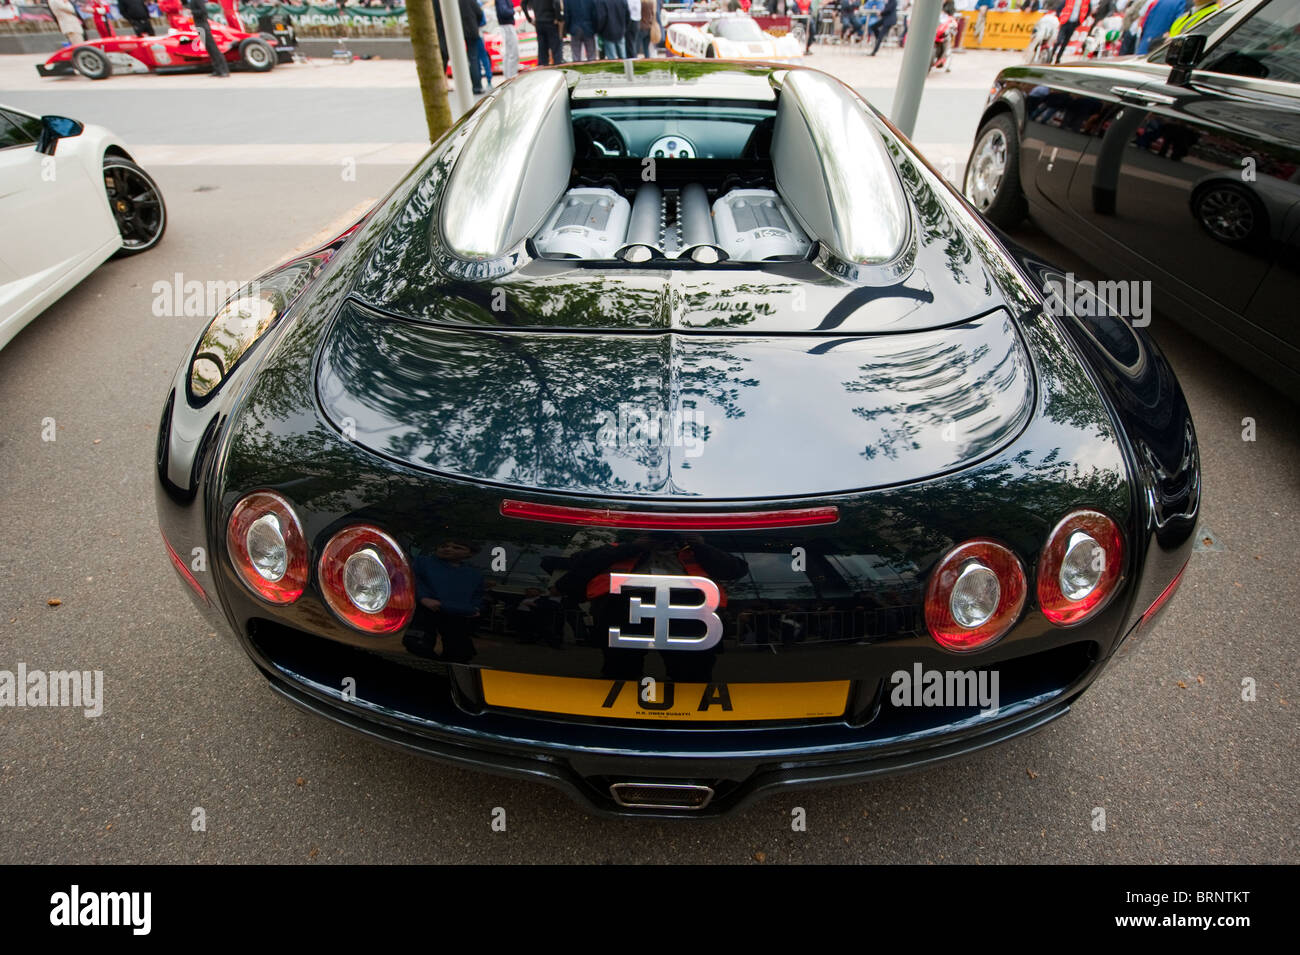 Bugatti Veyron 16.4 Super Sports Car nero argento Foto Stock